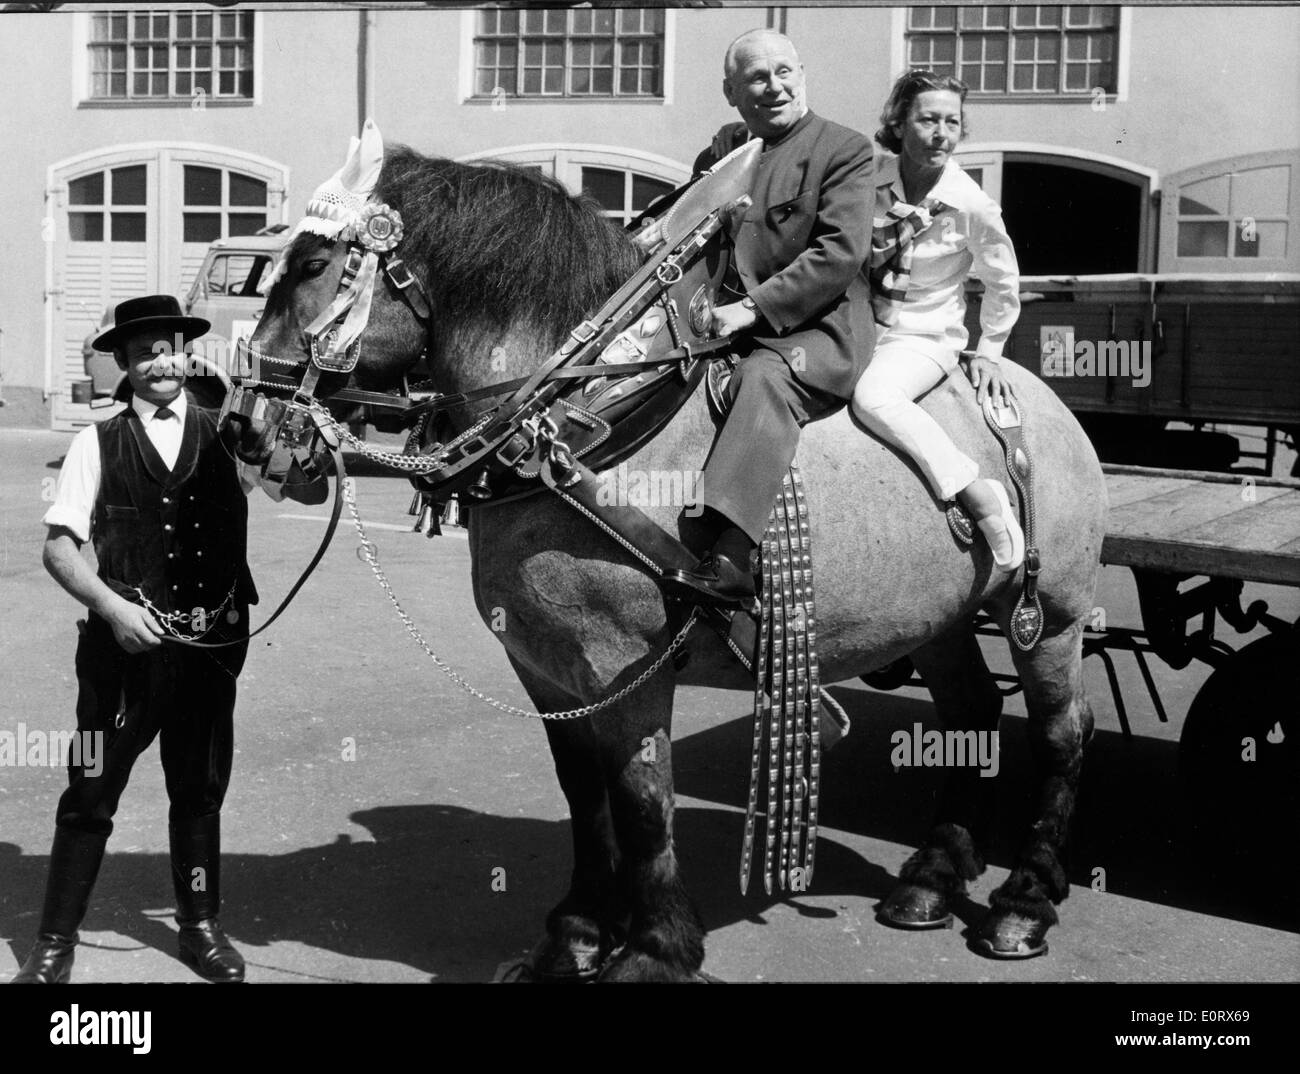 Actor Gert Frobe riding a horse Stock Photo